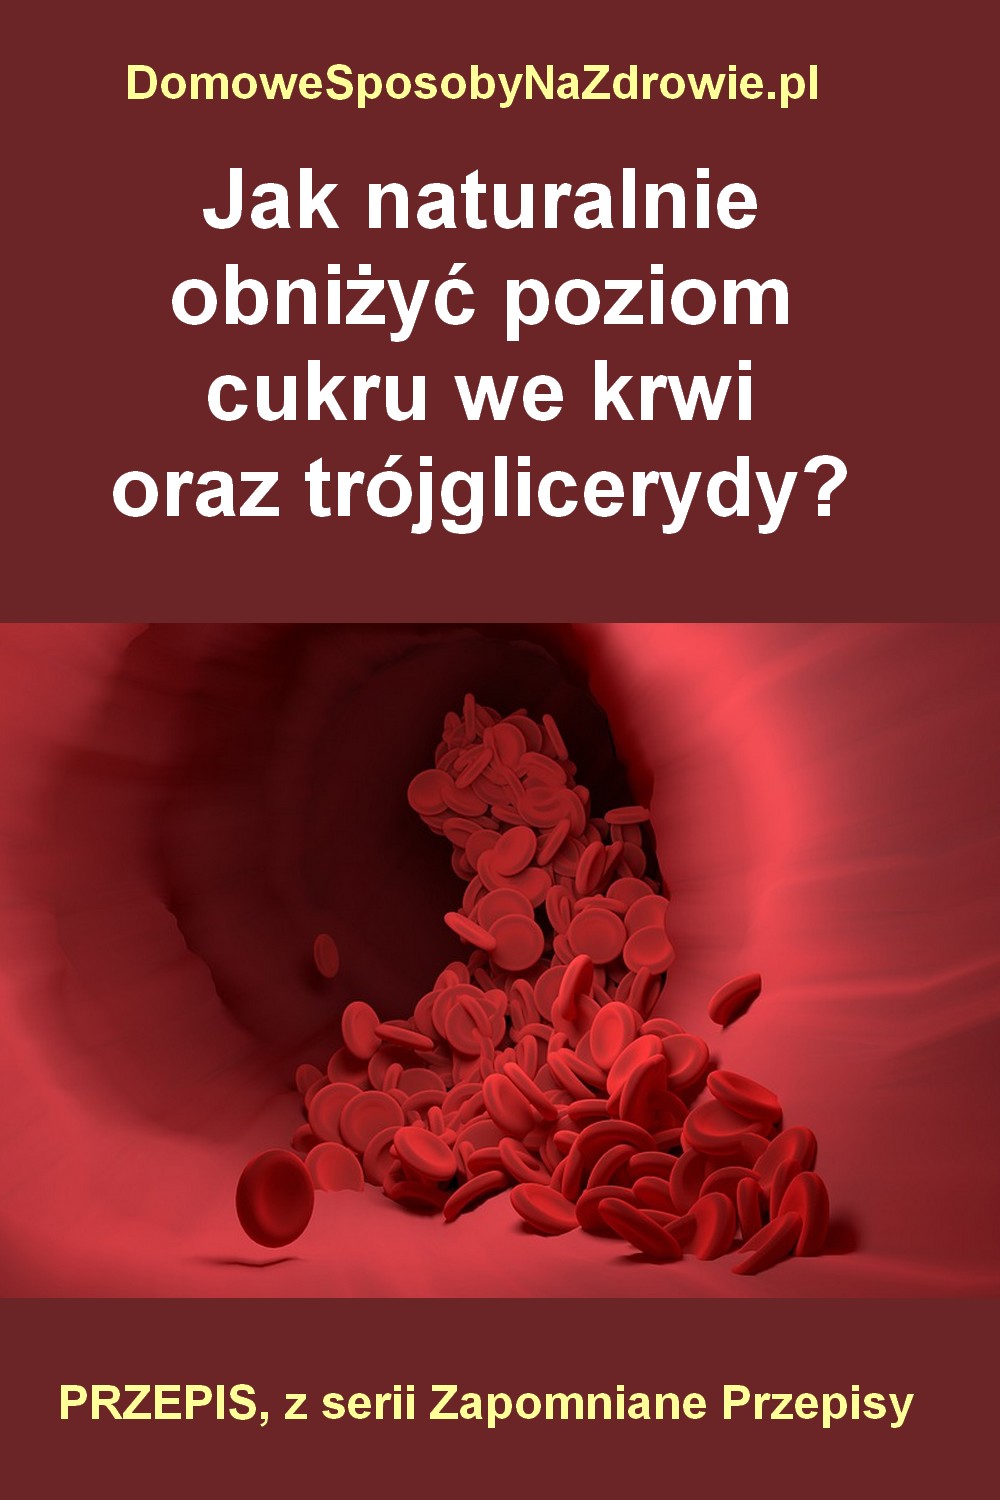 DomoweSposobyNaZdrowie.pl-jak-obniżyc-glukoze-we-krwi-i-trojglicerydy-przepis